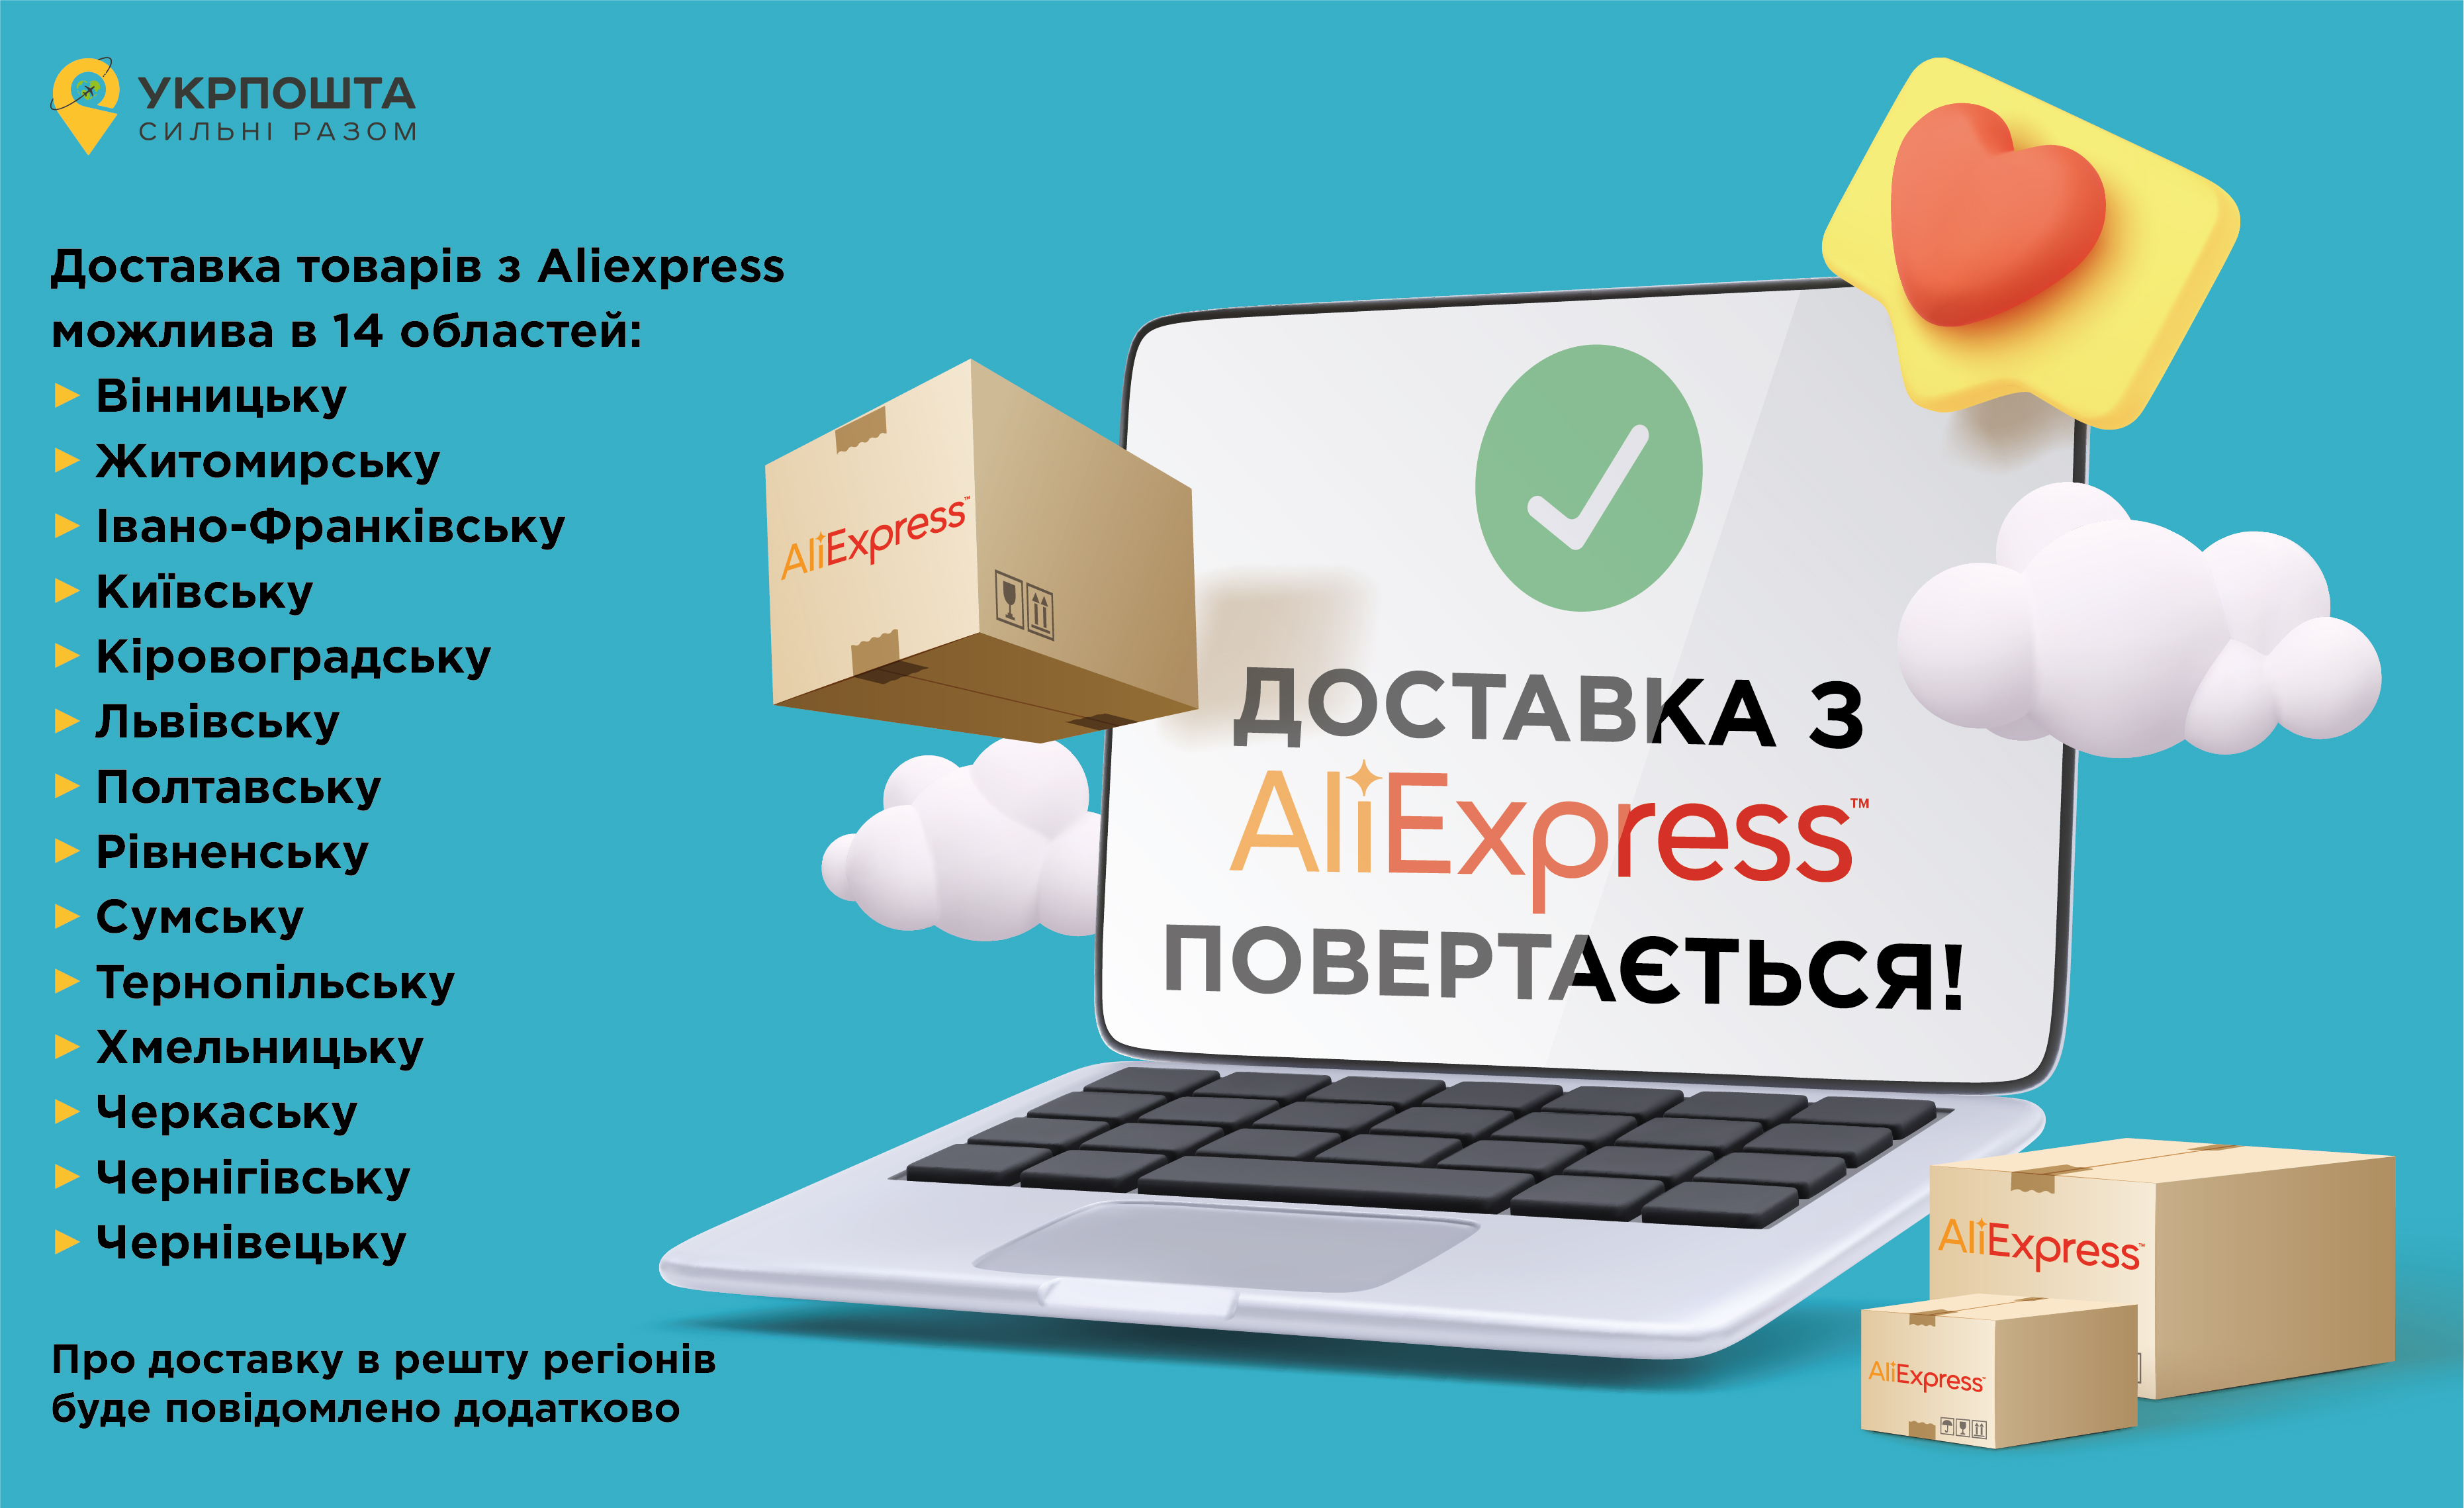 Замовлення товарів на AliExpress знову доступне в Україні